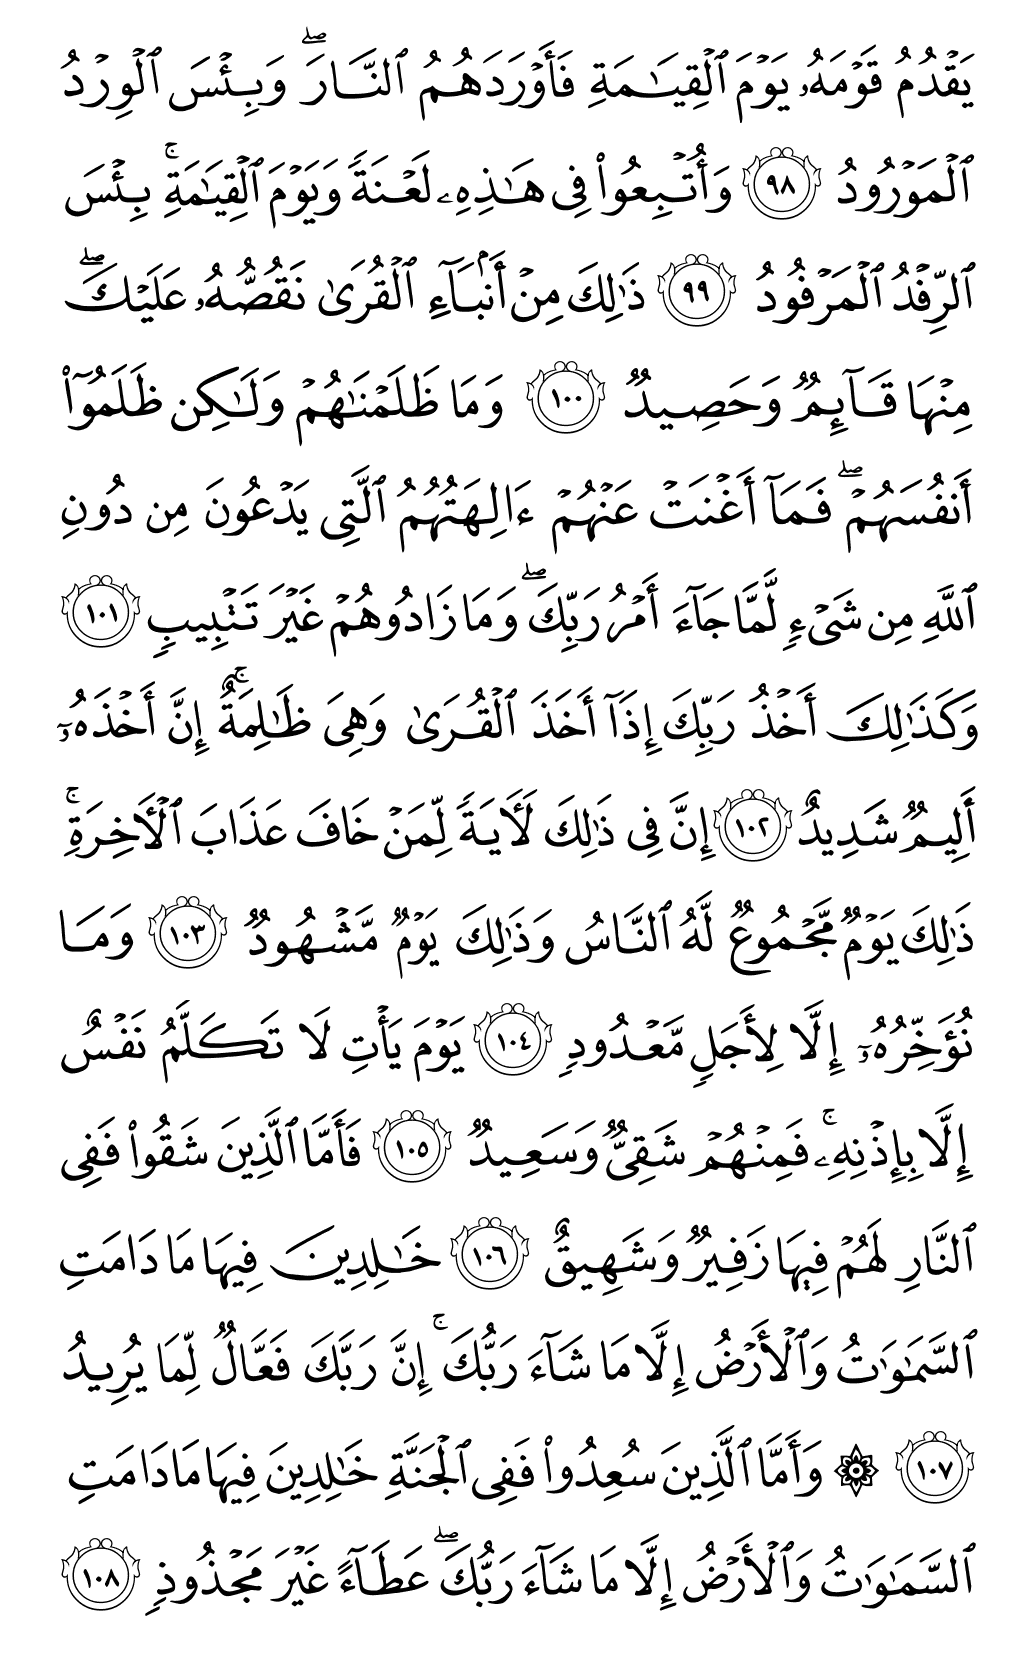 الصفحة رقم 233 من القرآن الكريم